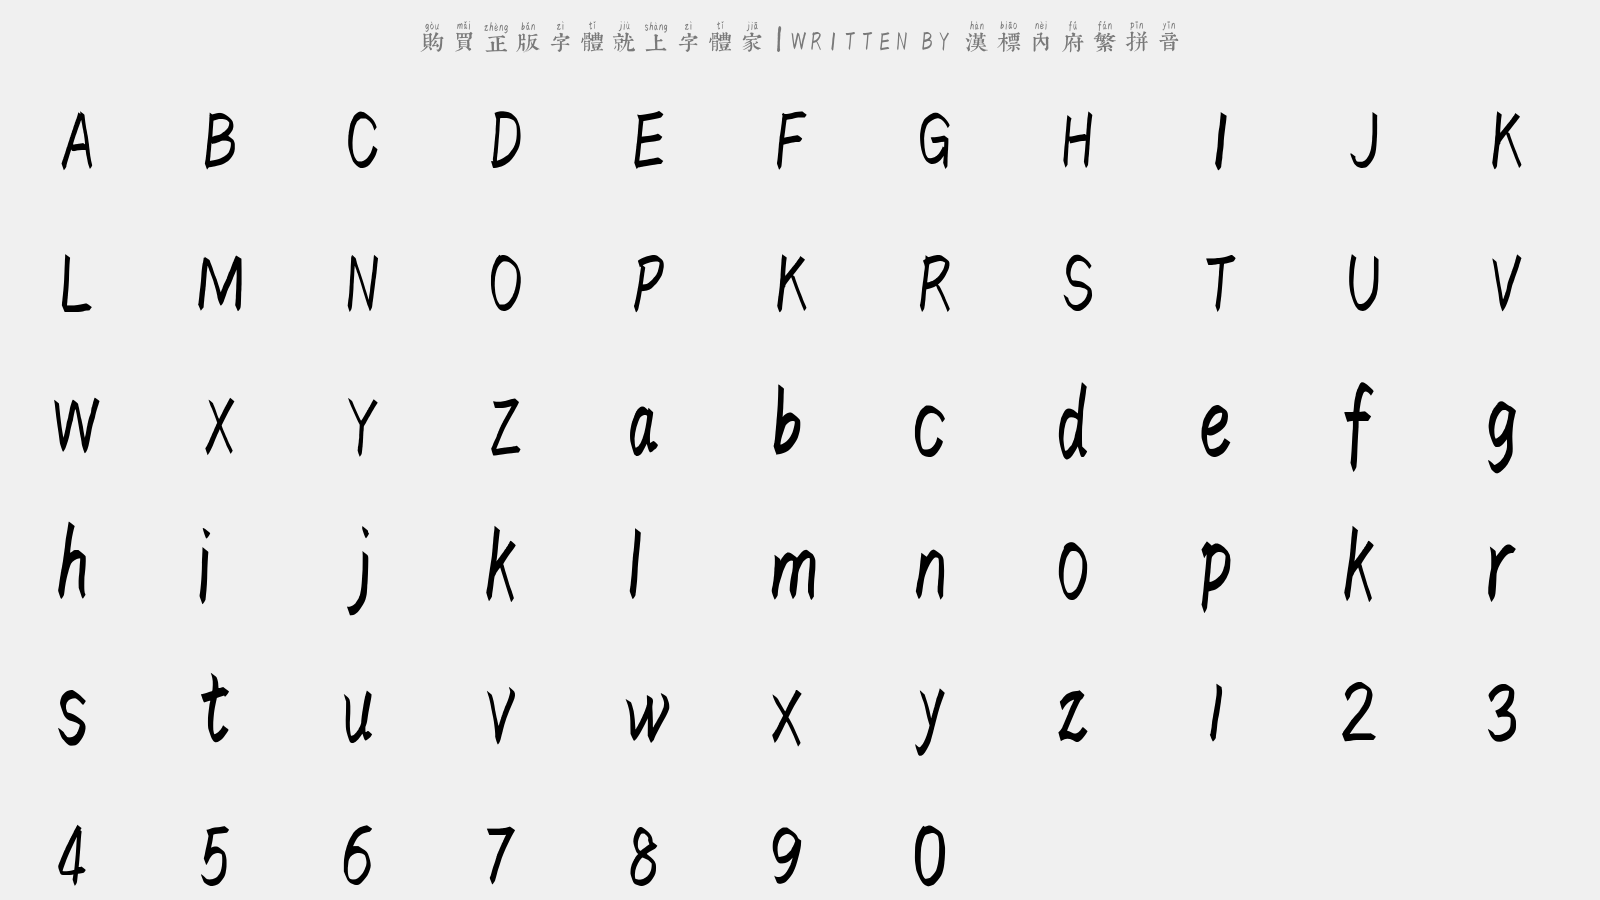 汉标内府繁拼音 - 大写字母/小写字母/数字